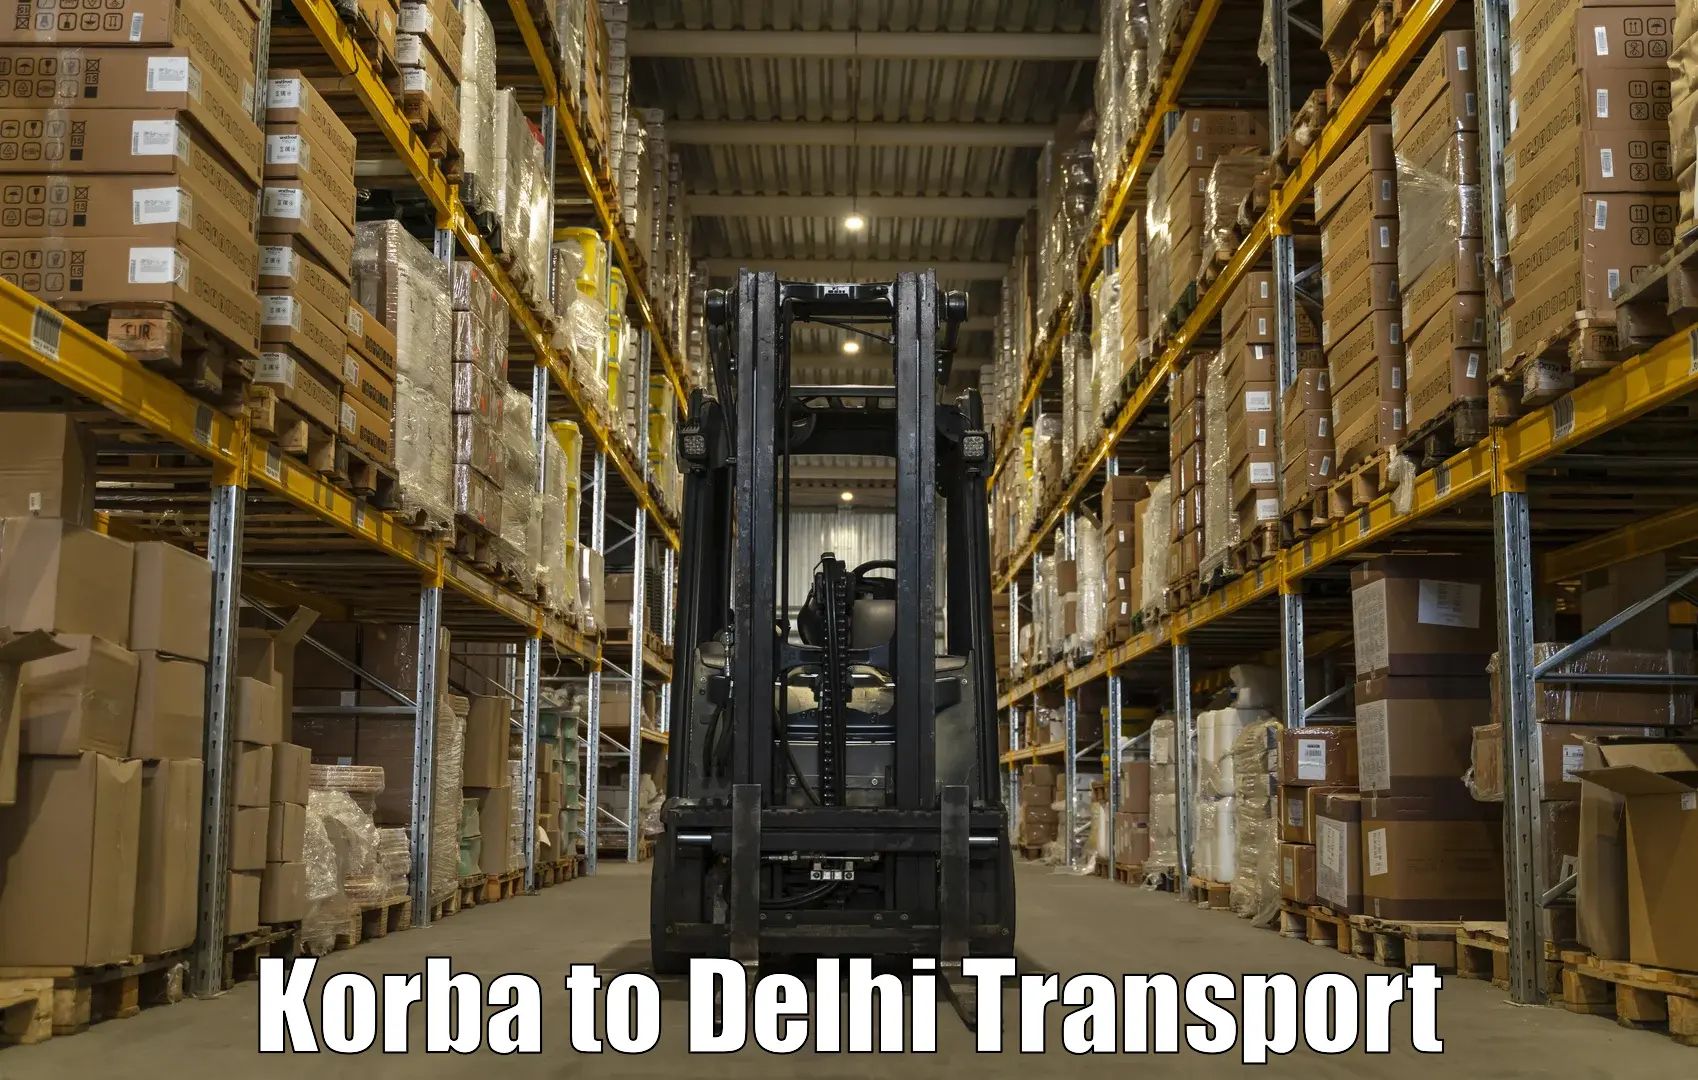 Nearest transport service Korba to Kalkaji